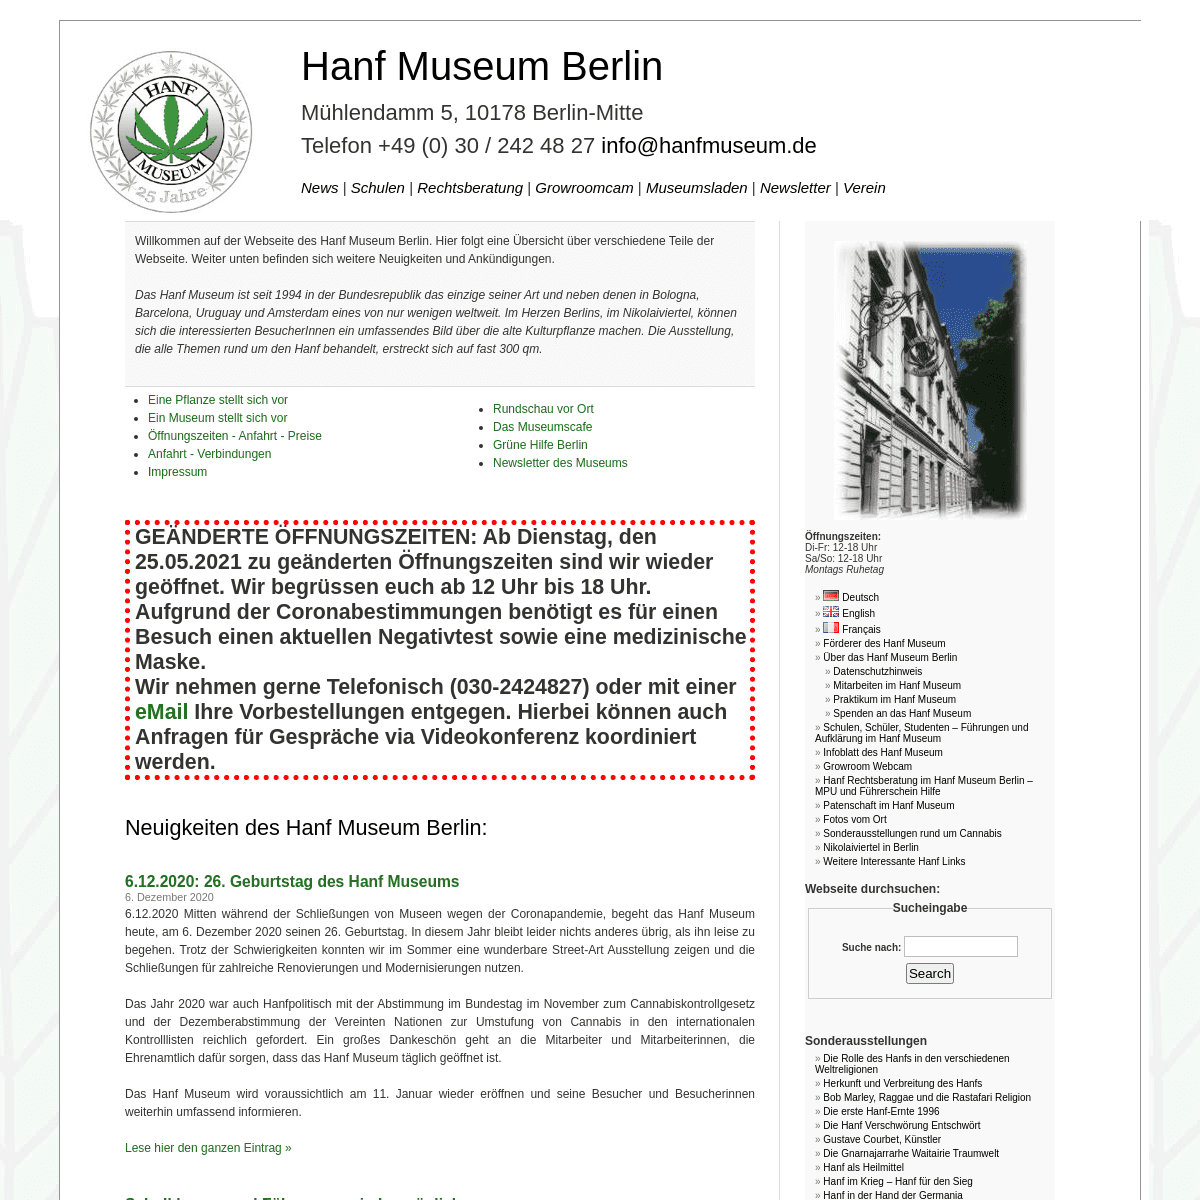 A complete backup of https://hanfmuseum.de